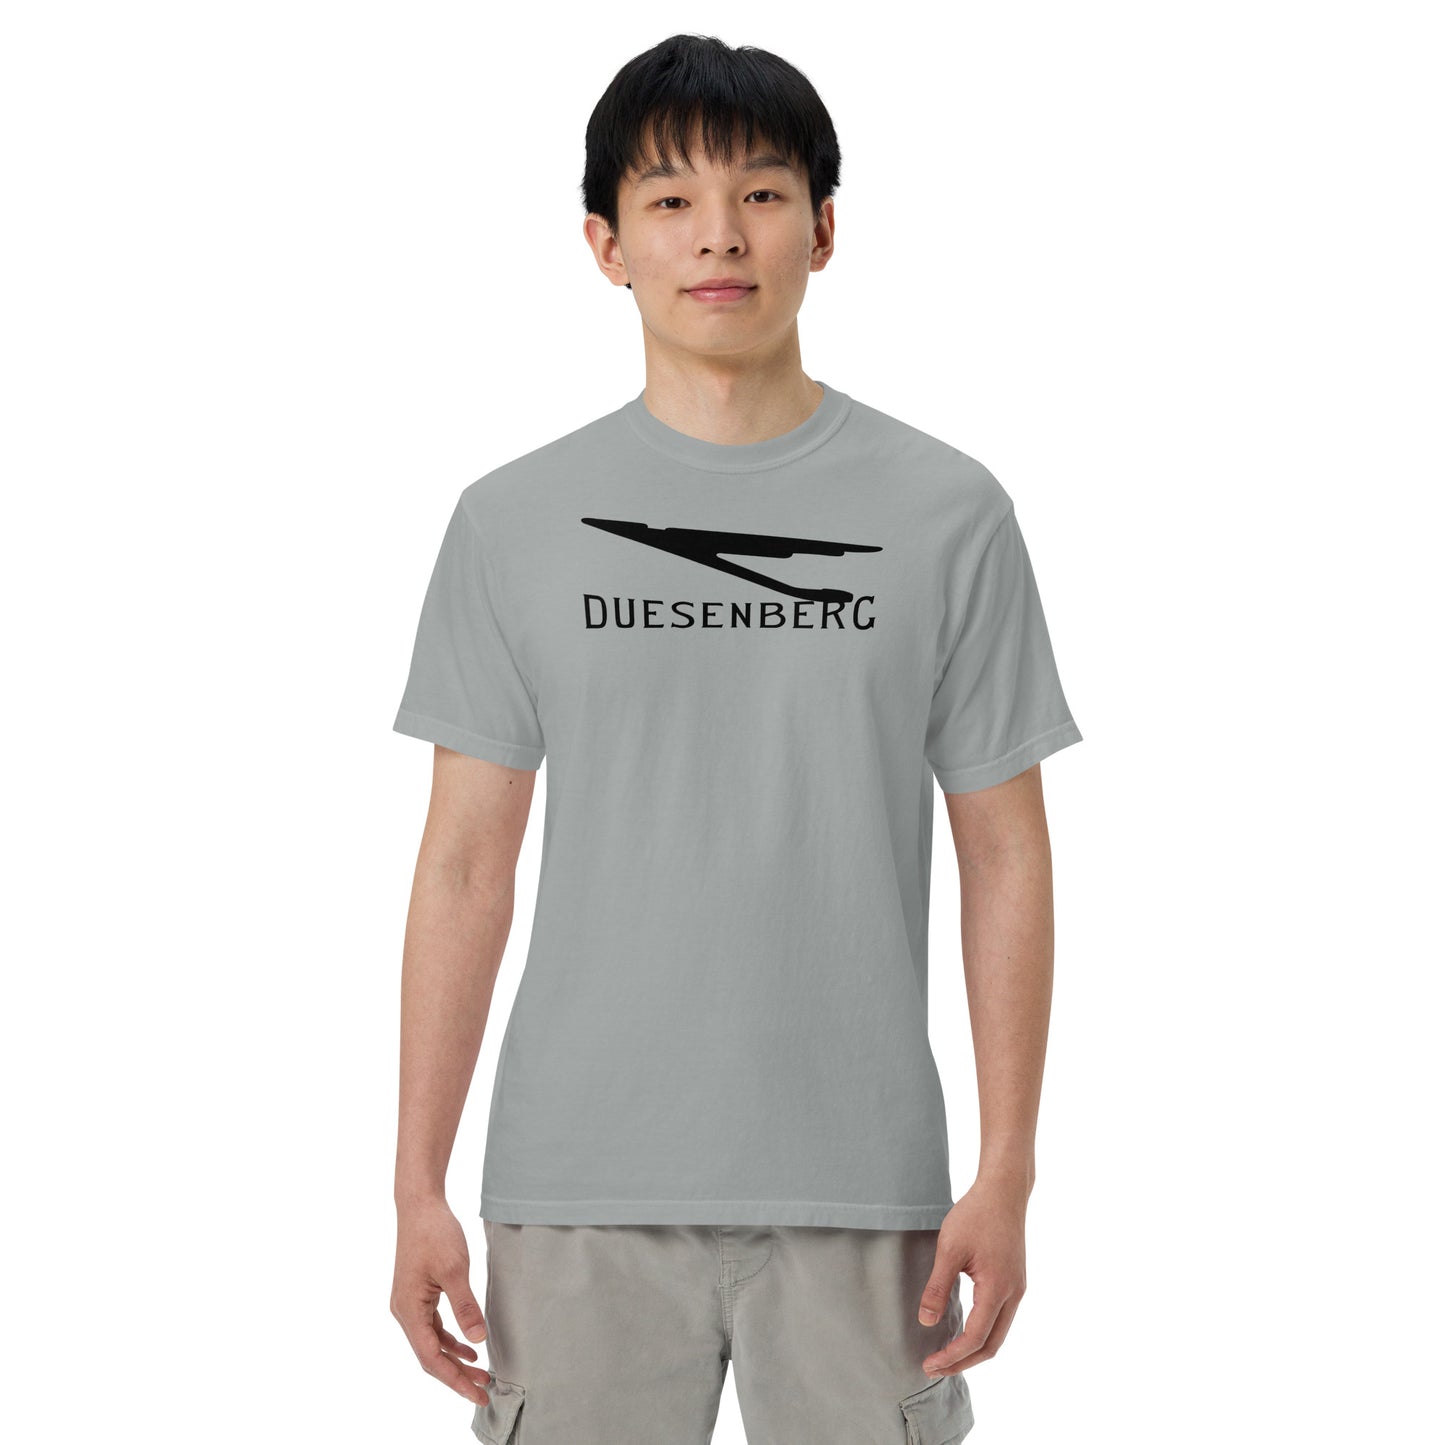 Duesenberg - Logo - Unisex garment-dyed heavyweight t-shirt